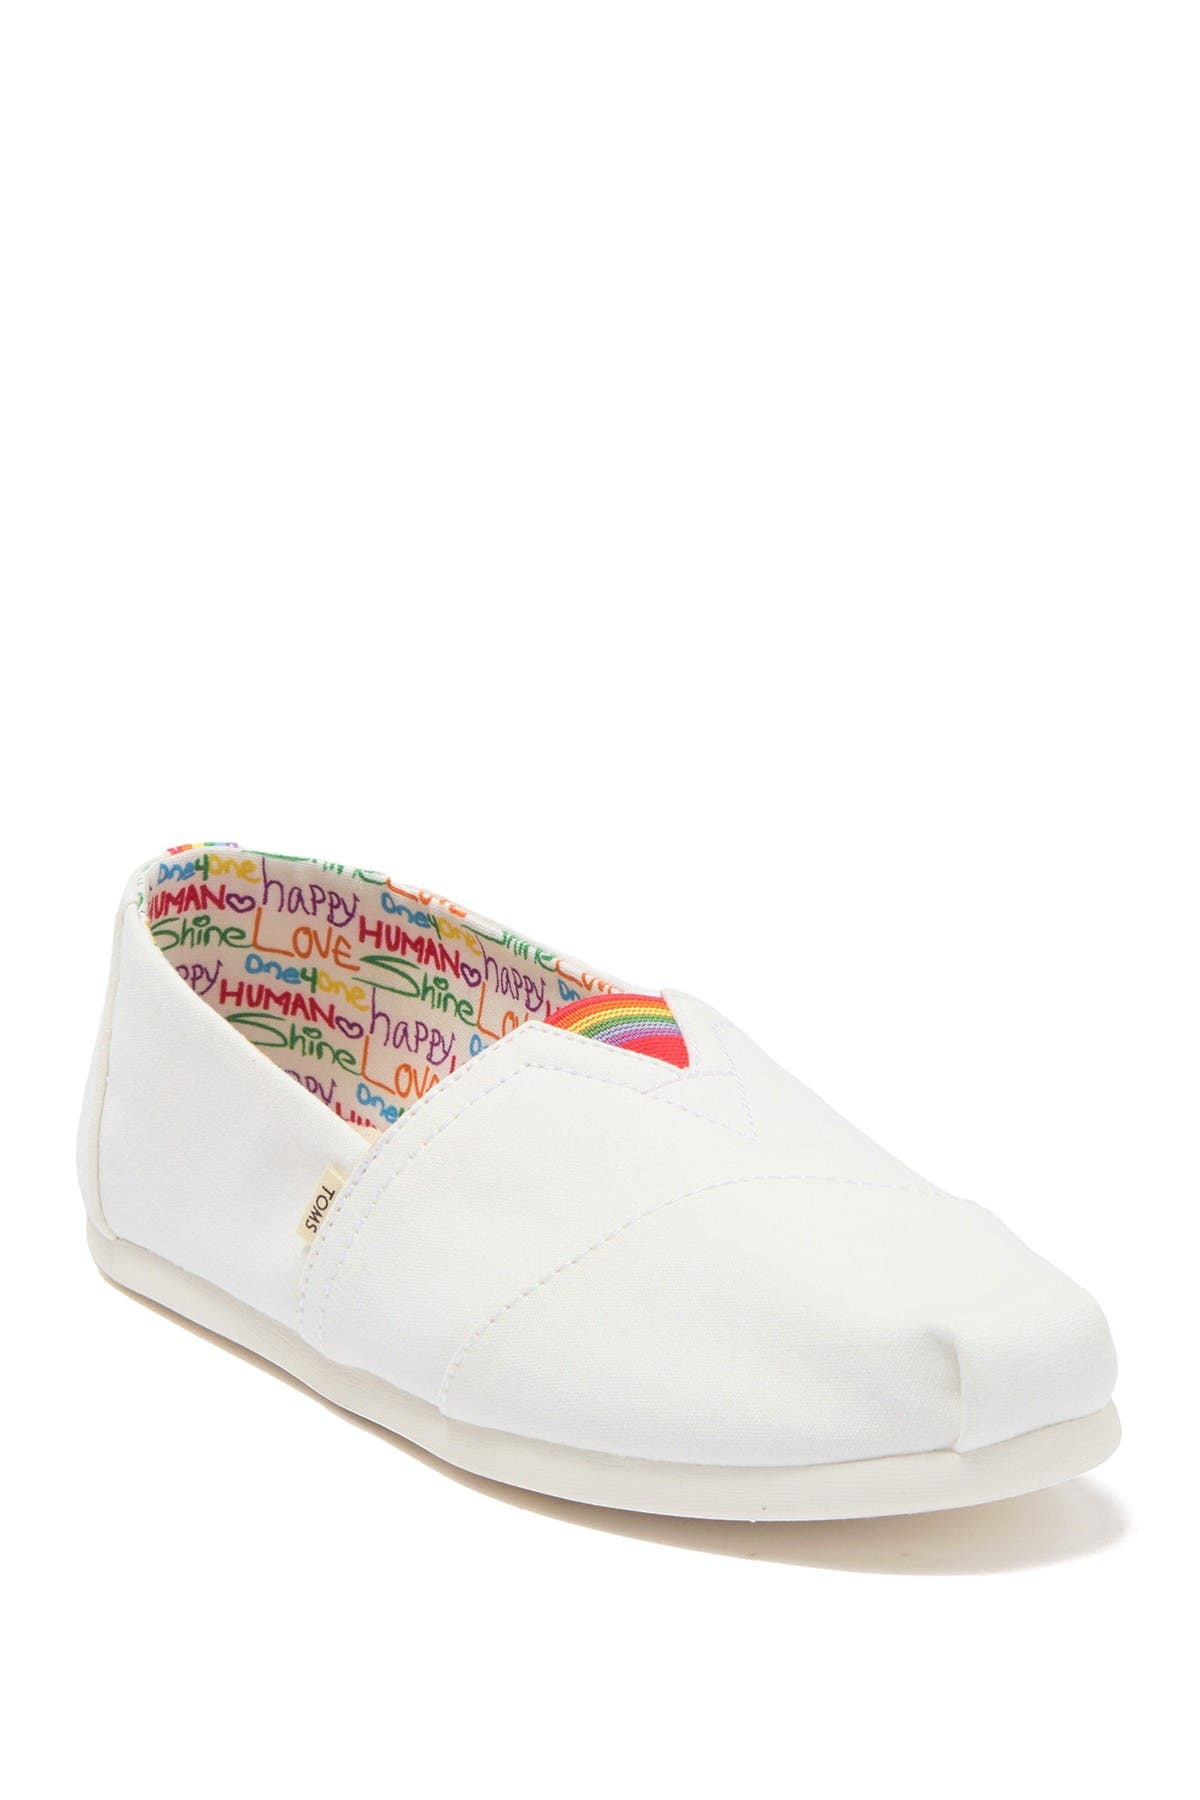 Toms Alpargata Pride Slip-on Sneaker In White